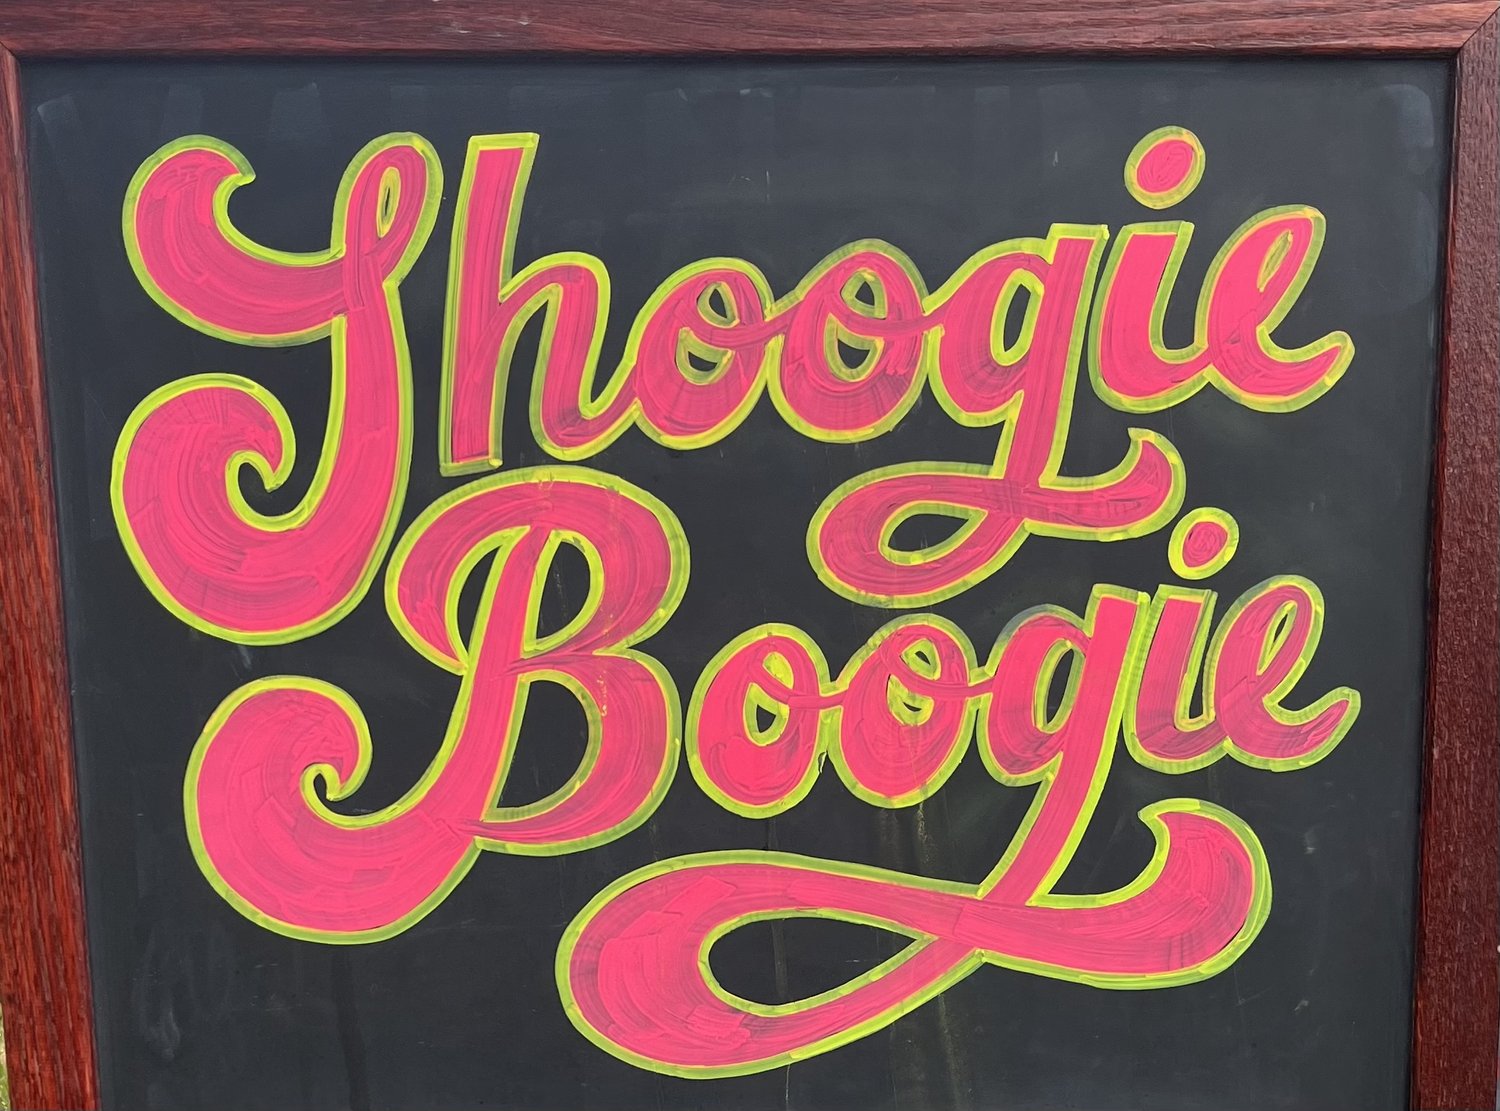 Shoogie Boogie DJs